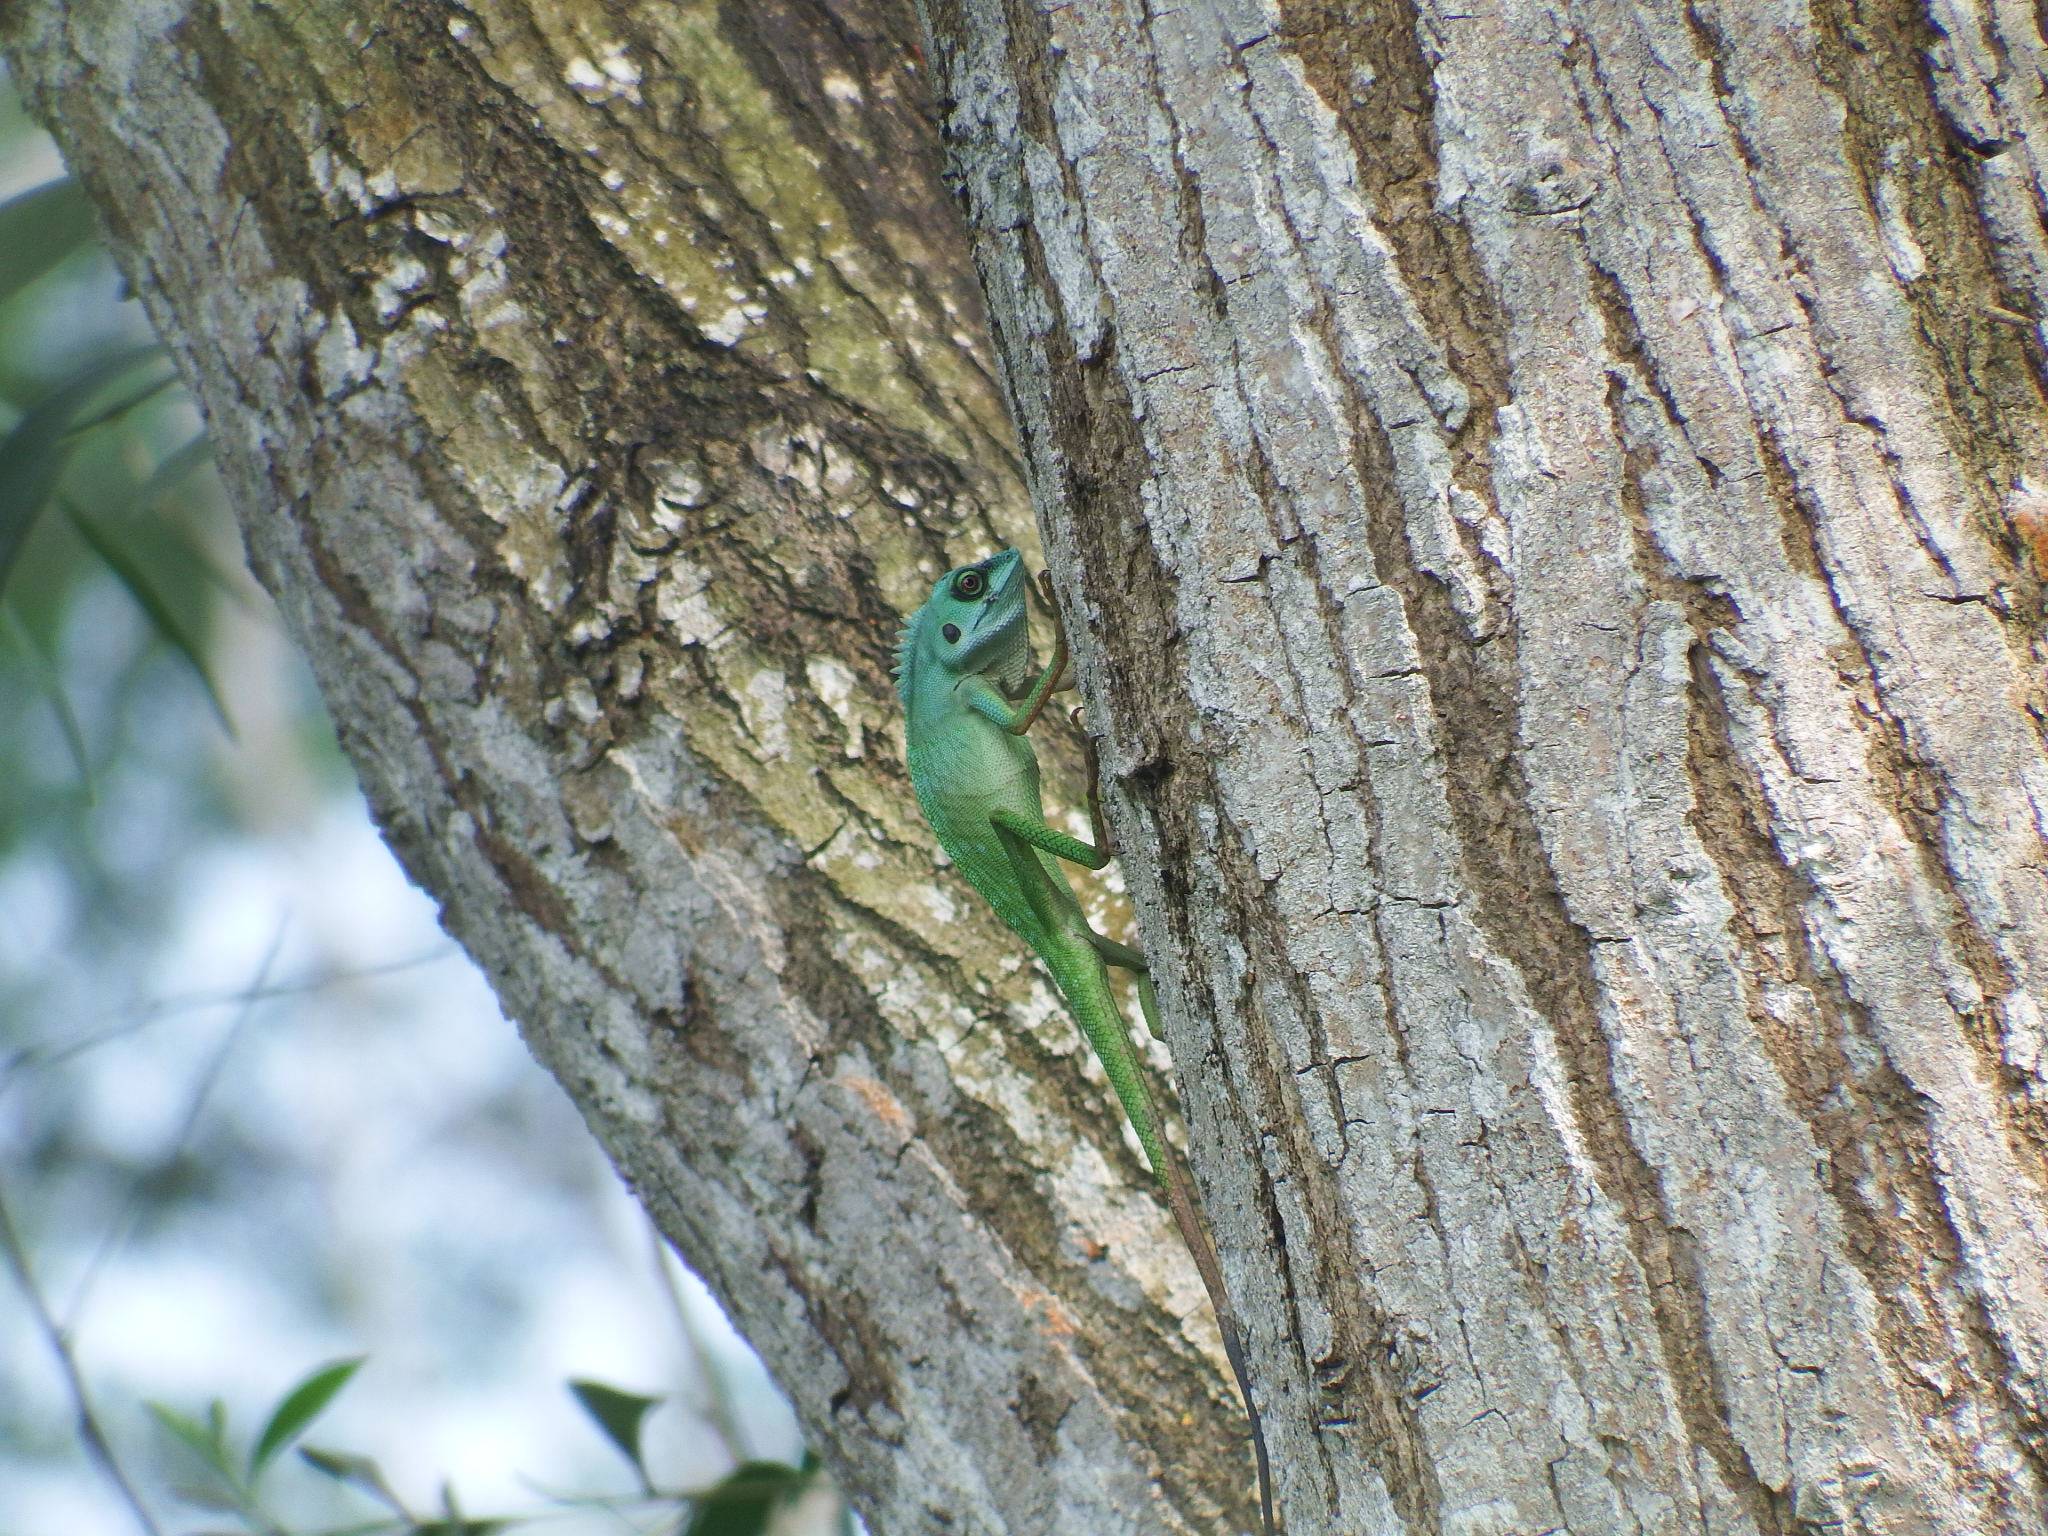 Green crested lizard